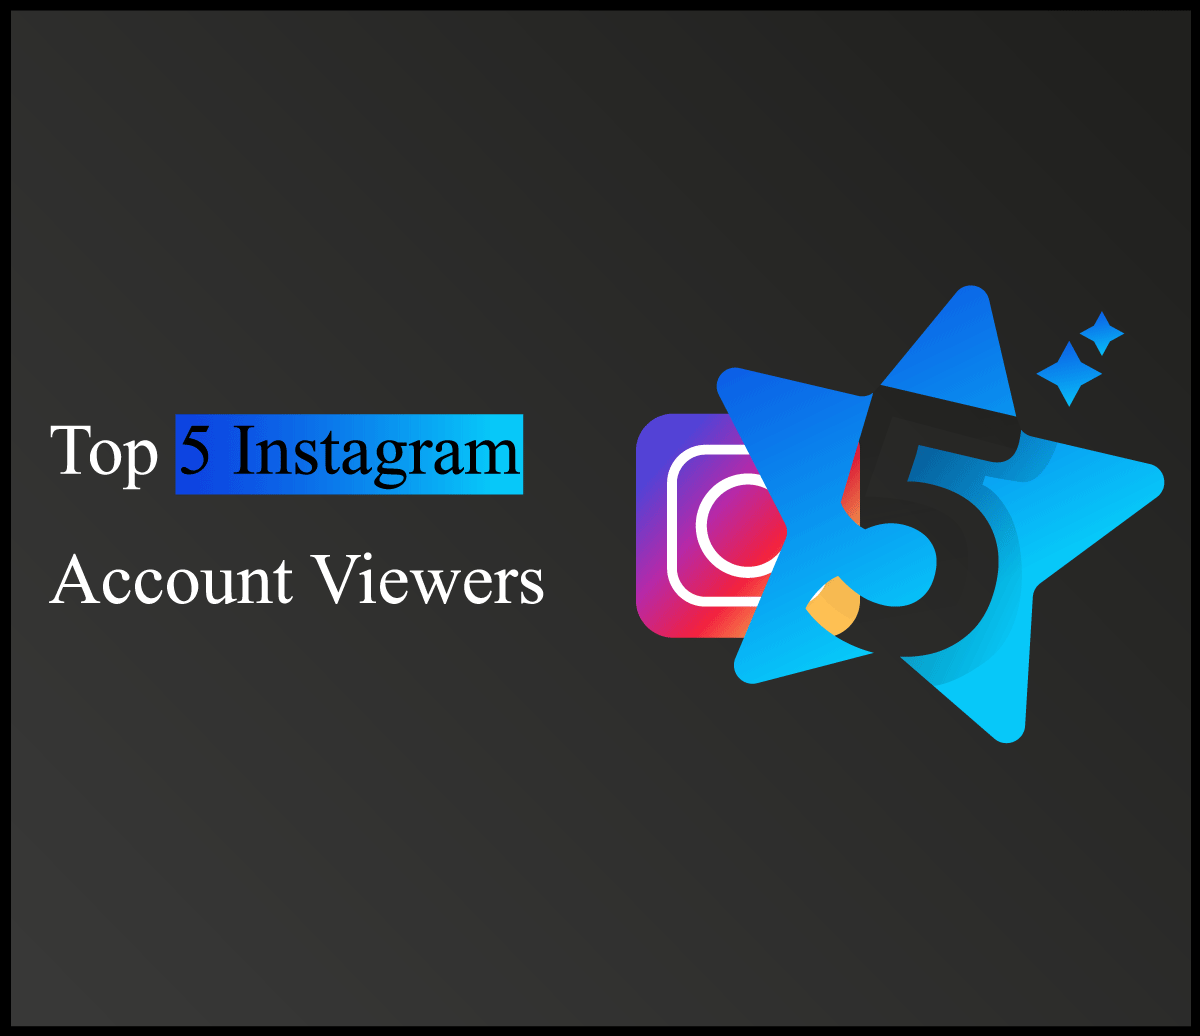 Top 5 Instagram Account Viewers